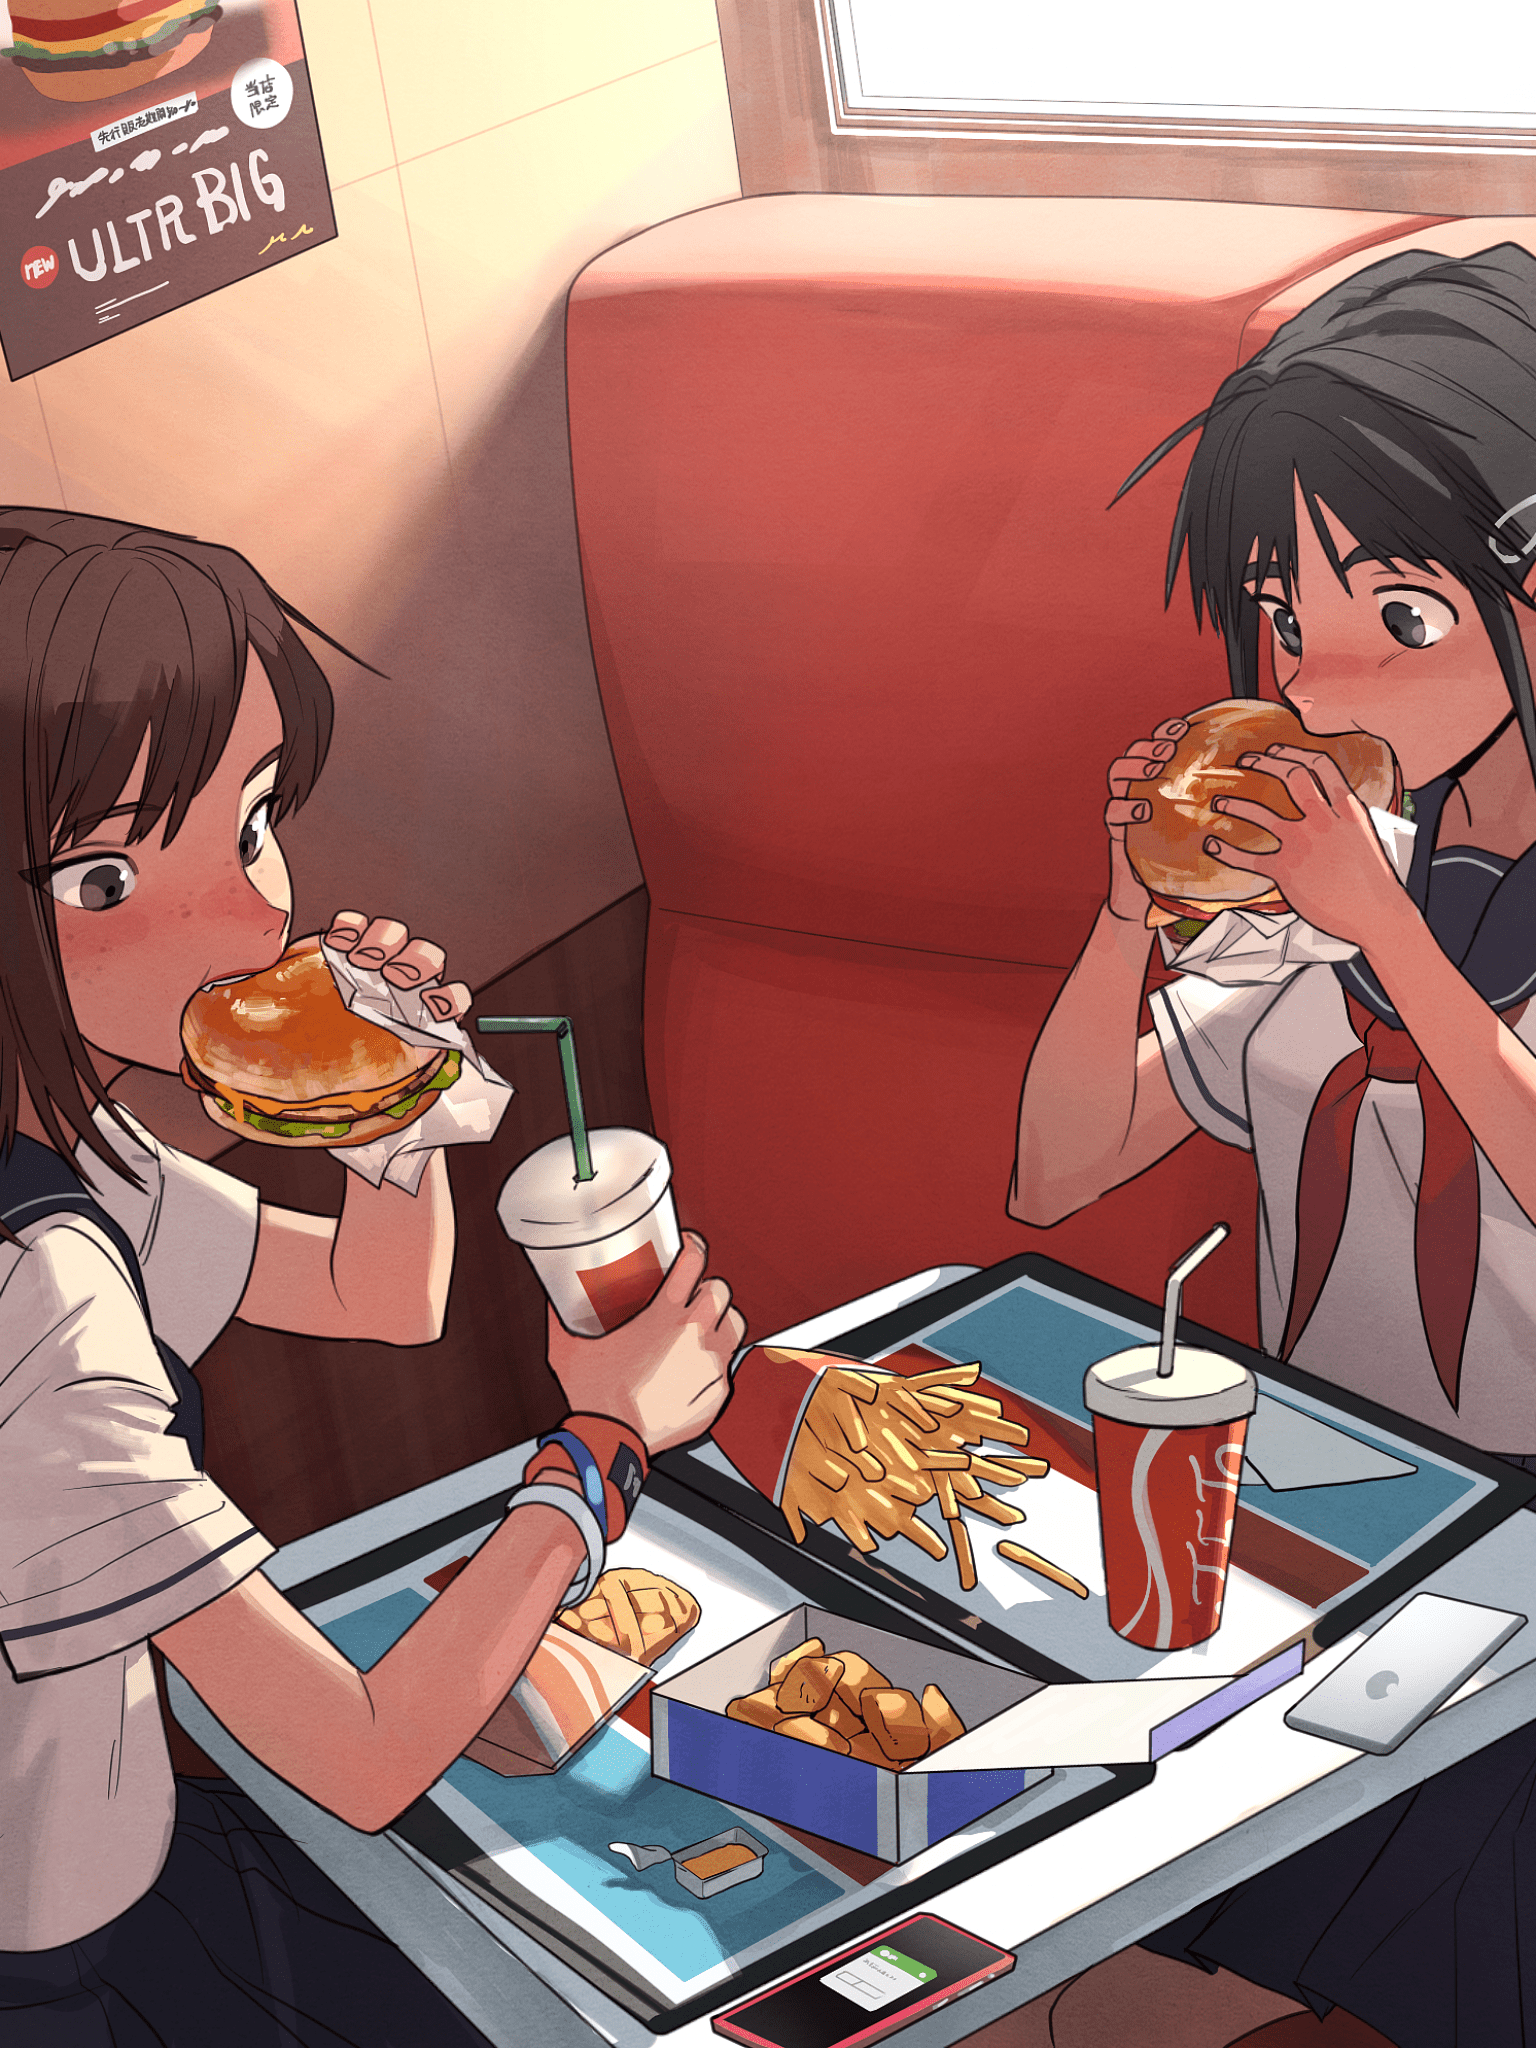 1536x2048 Tải xuống 1536x2048 Cô gái trong anime, Hamburger, Ăn uống, Trường học